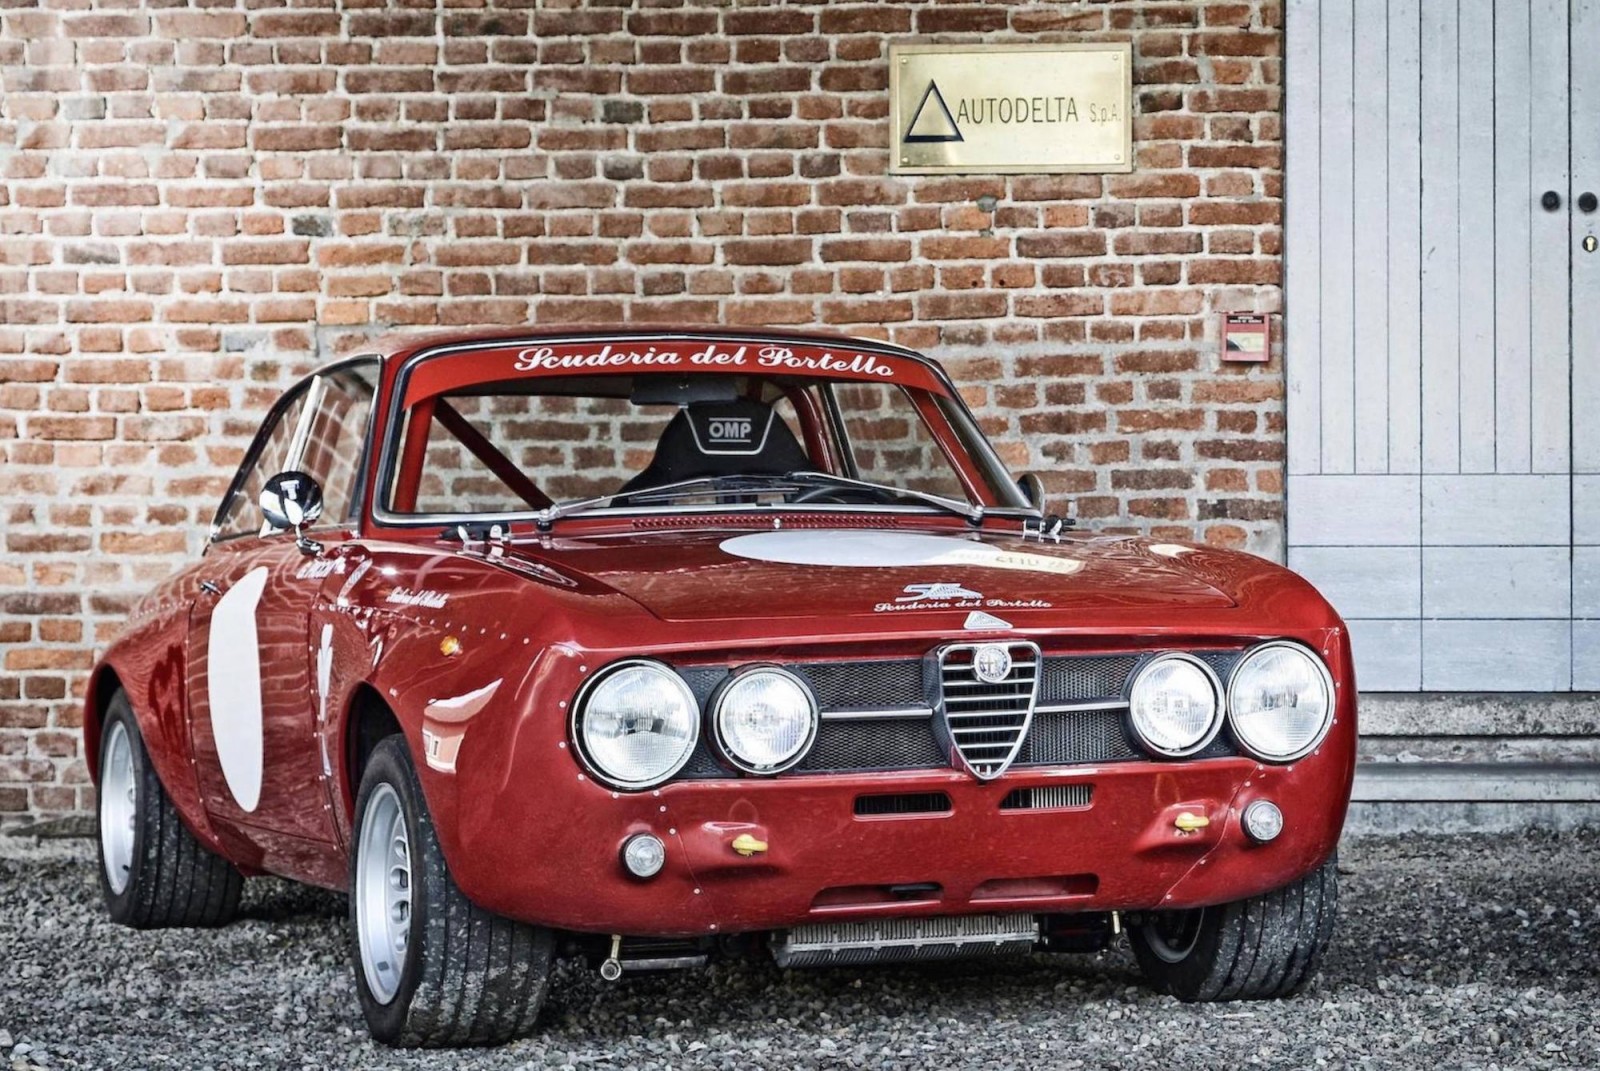 Alfa Romeo Giulia GTA: Características, fotos e información